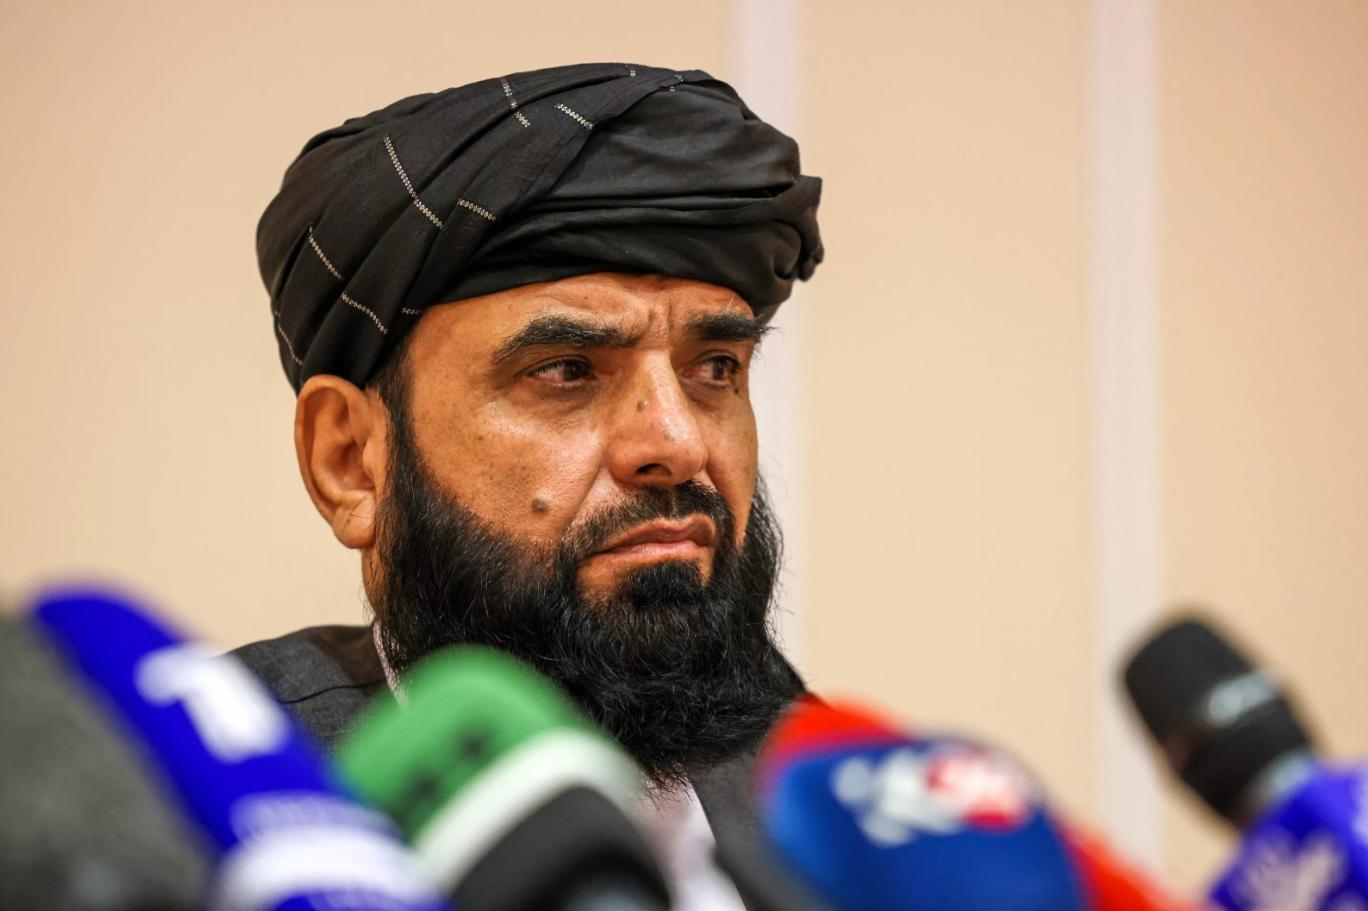 taliban sozcusu suheyl sahin kadinlarin egitimini yasaklamadik erteledik 01